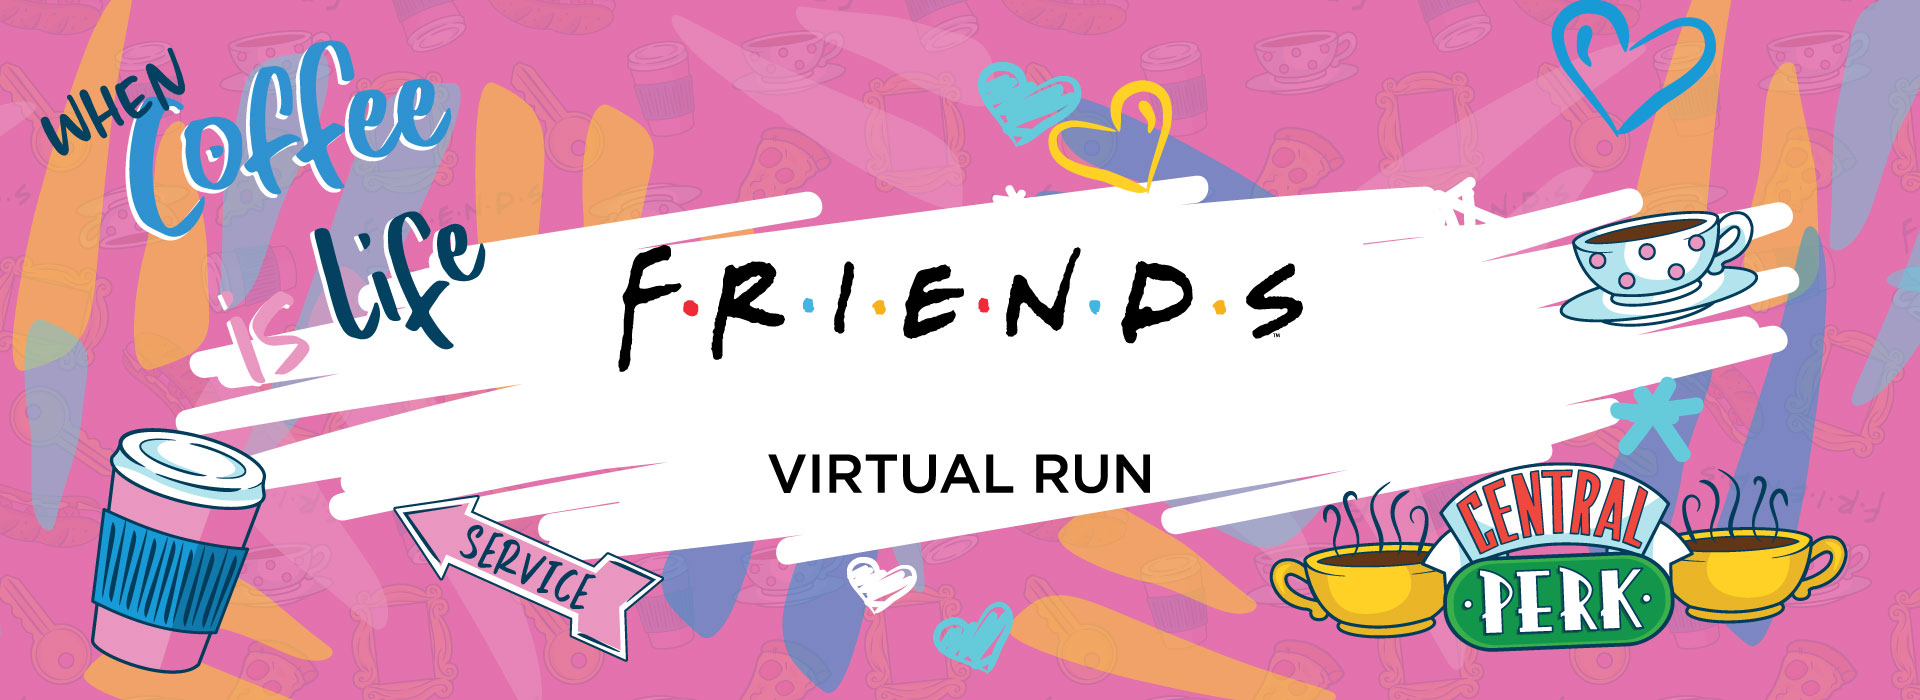 Friends Virtual Run